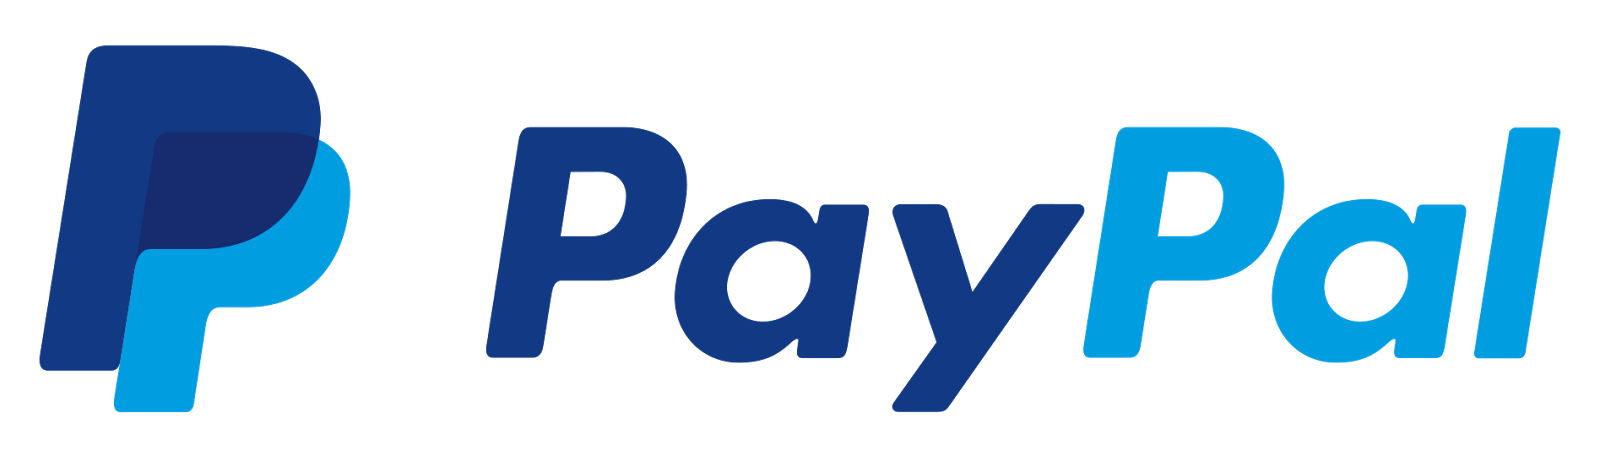 Paypal paiement sécurise Shop Coiffure